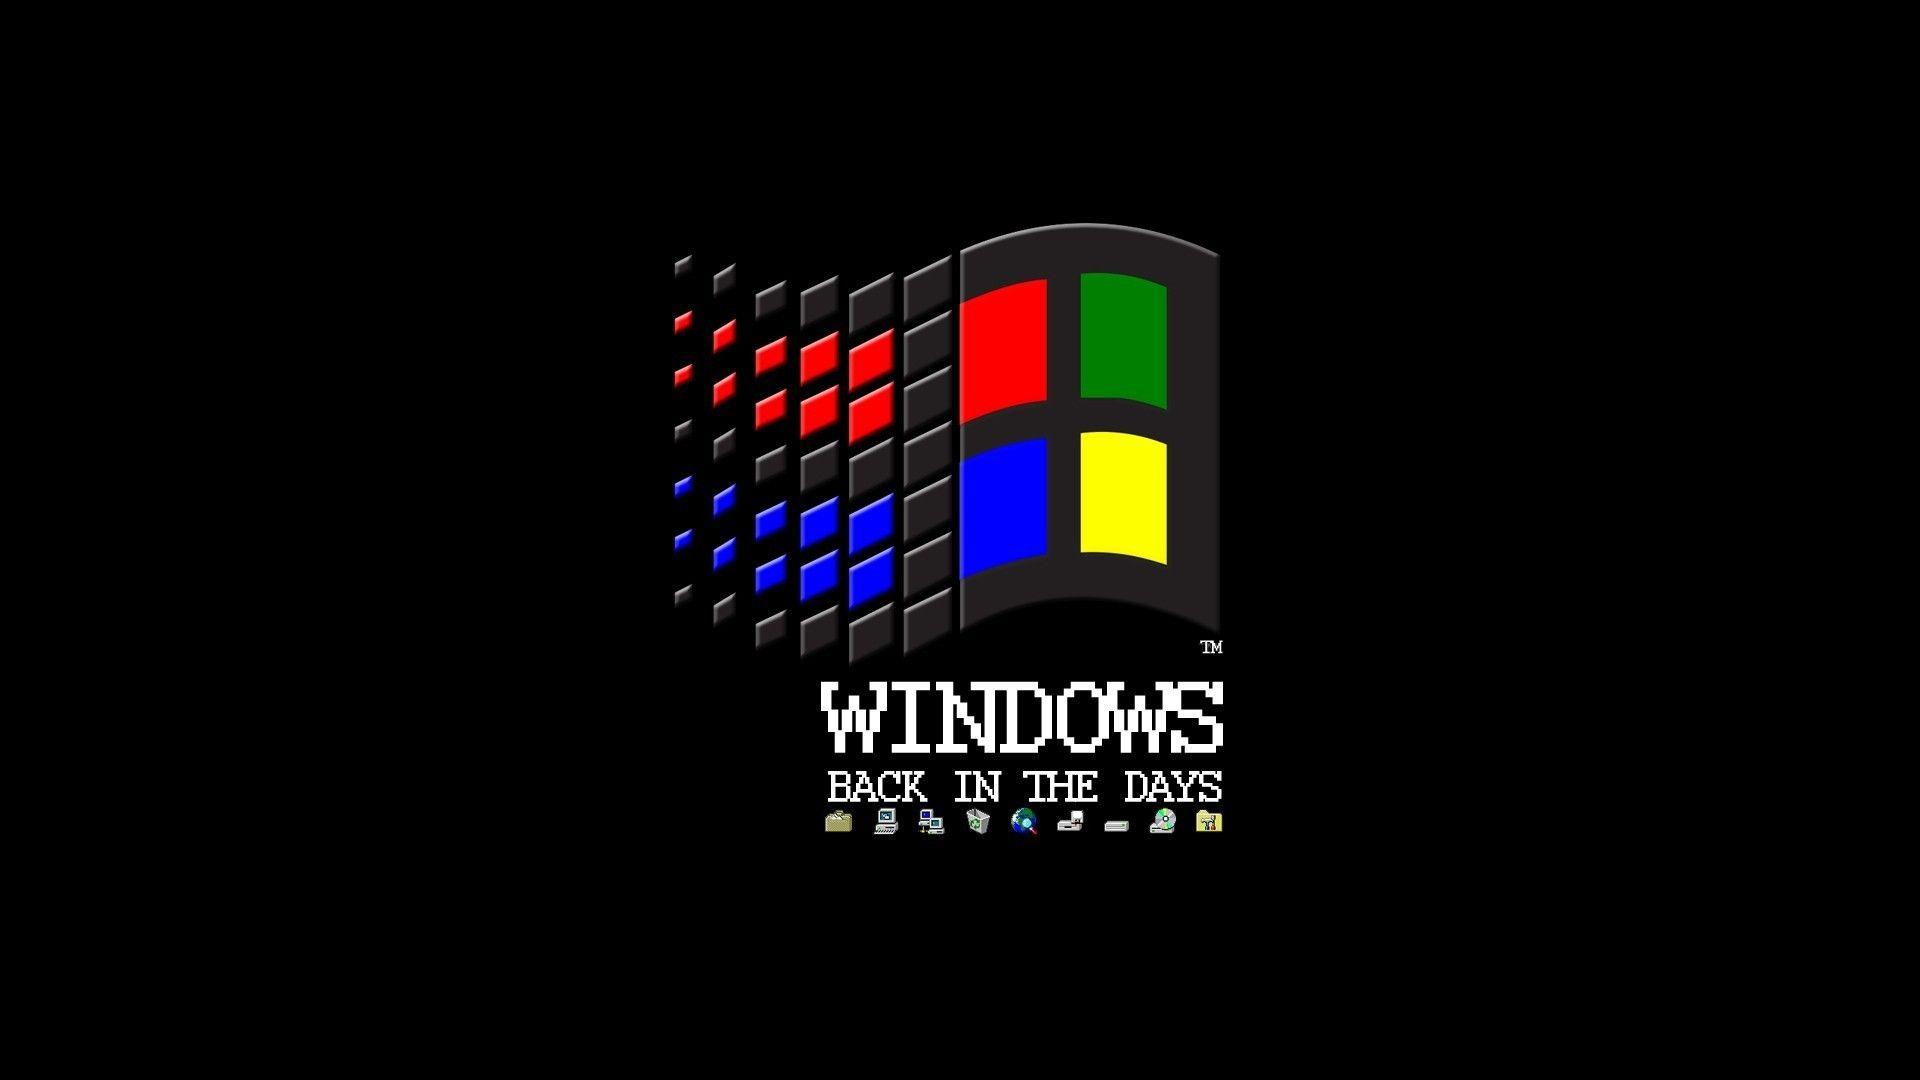 Cảm nhận ngay không khí retro thuần khiết với hình nền Windows 98 màu đen đầy đủ sức hút. Cùng nhìn ngắm lớp nền chắc chắn cùng chiếc Recycle Bin góc trên bên trái, đầy đủ các biểu tượng kinh điển của thời đại tuyệt vời đó.